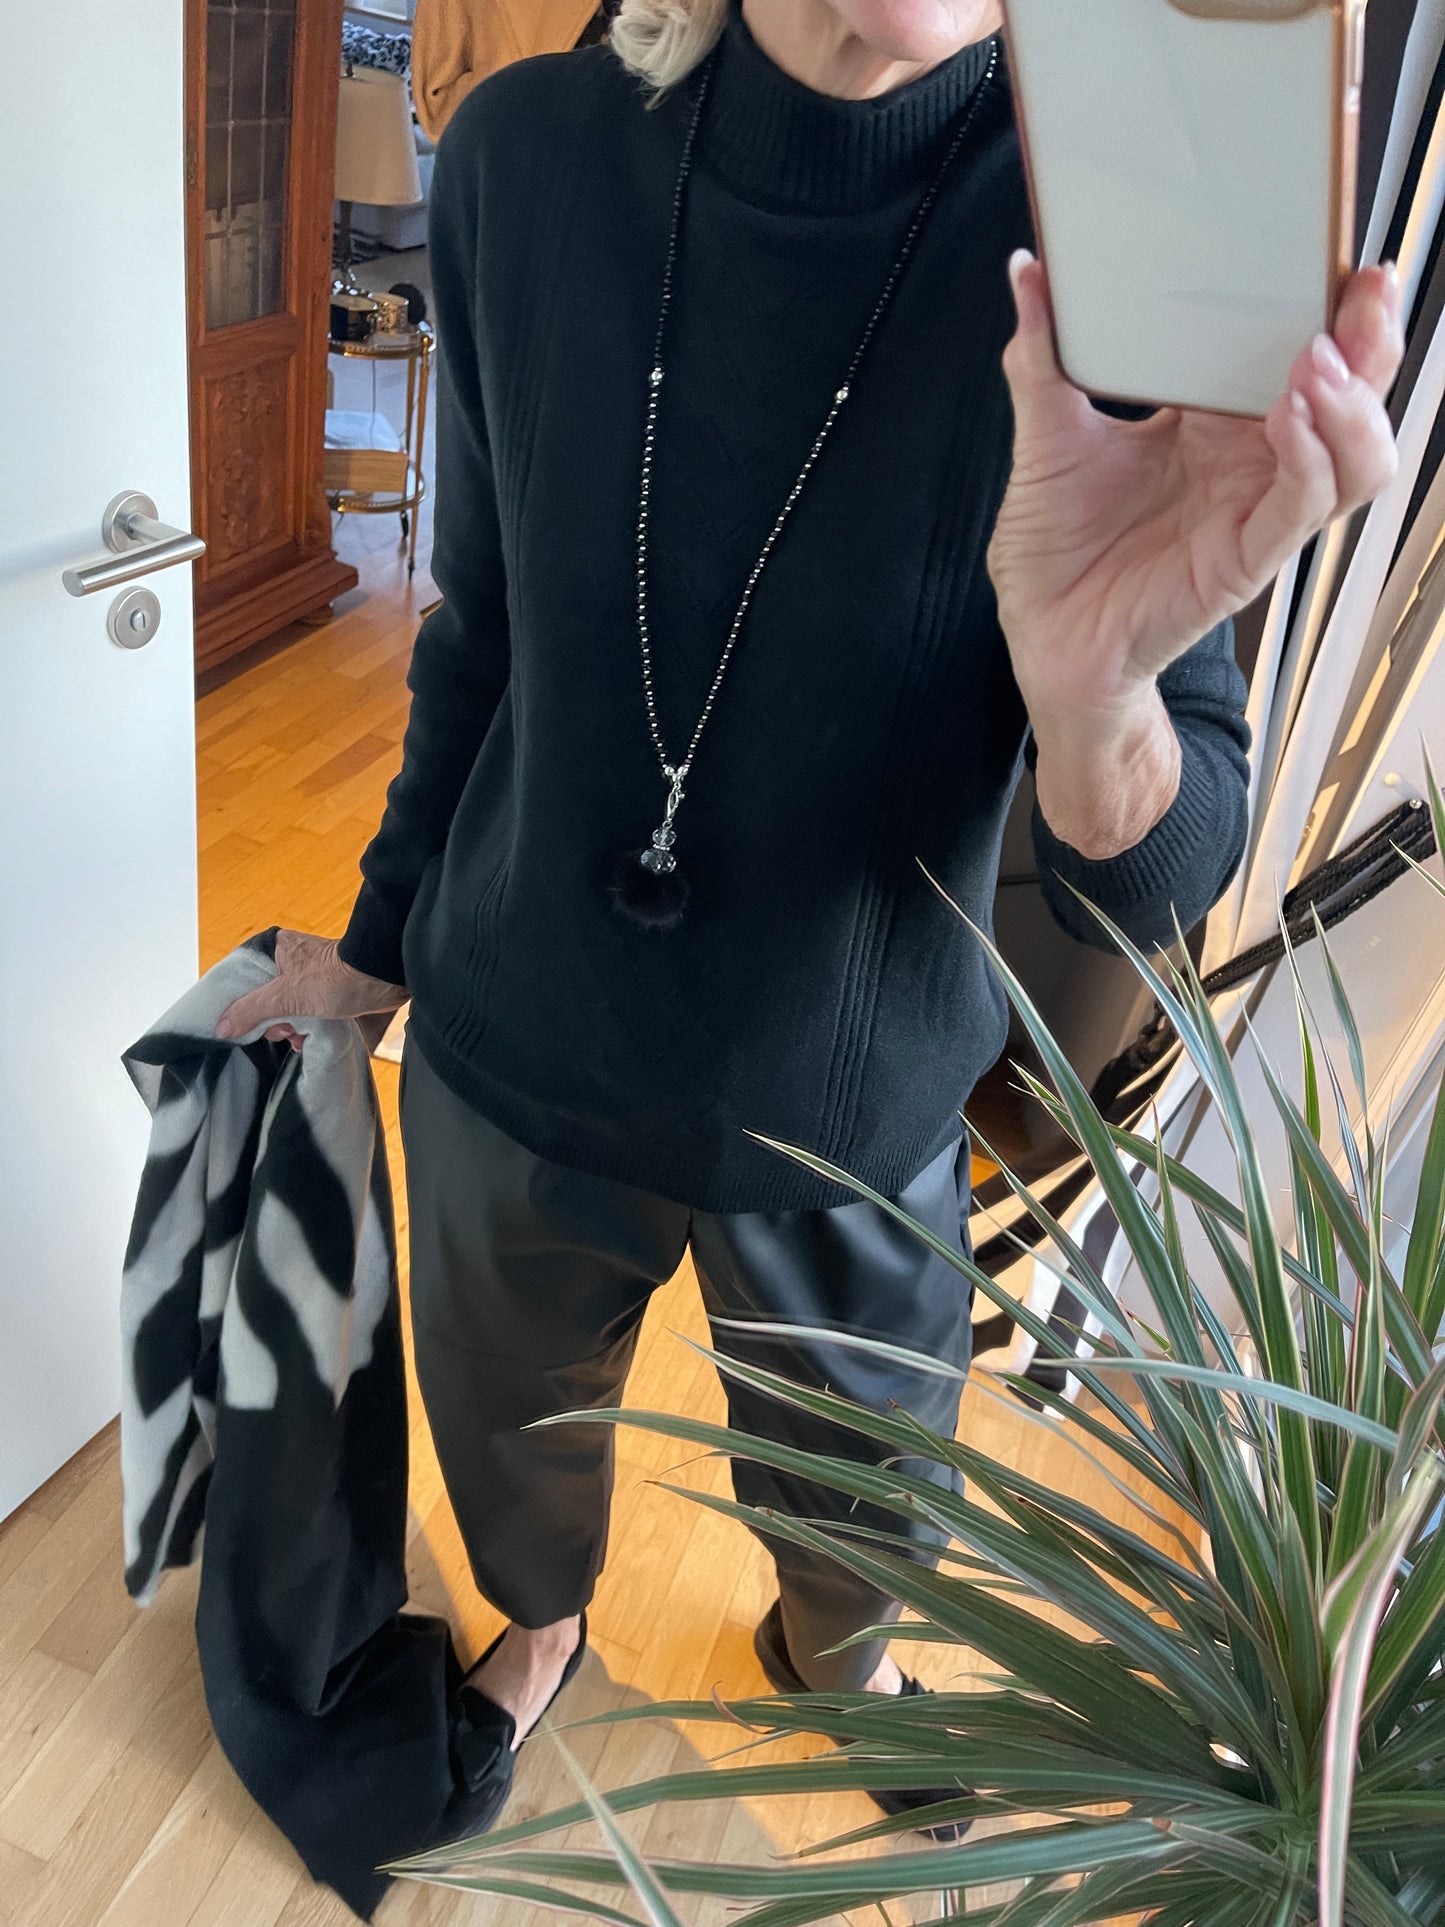 Pullover MOLLY schwarz €79,90; stylischer Look & herrlich angenehm zu tragen